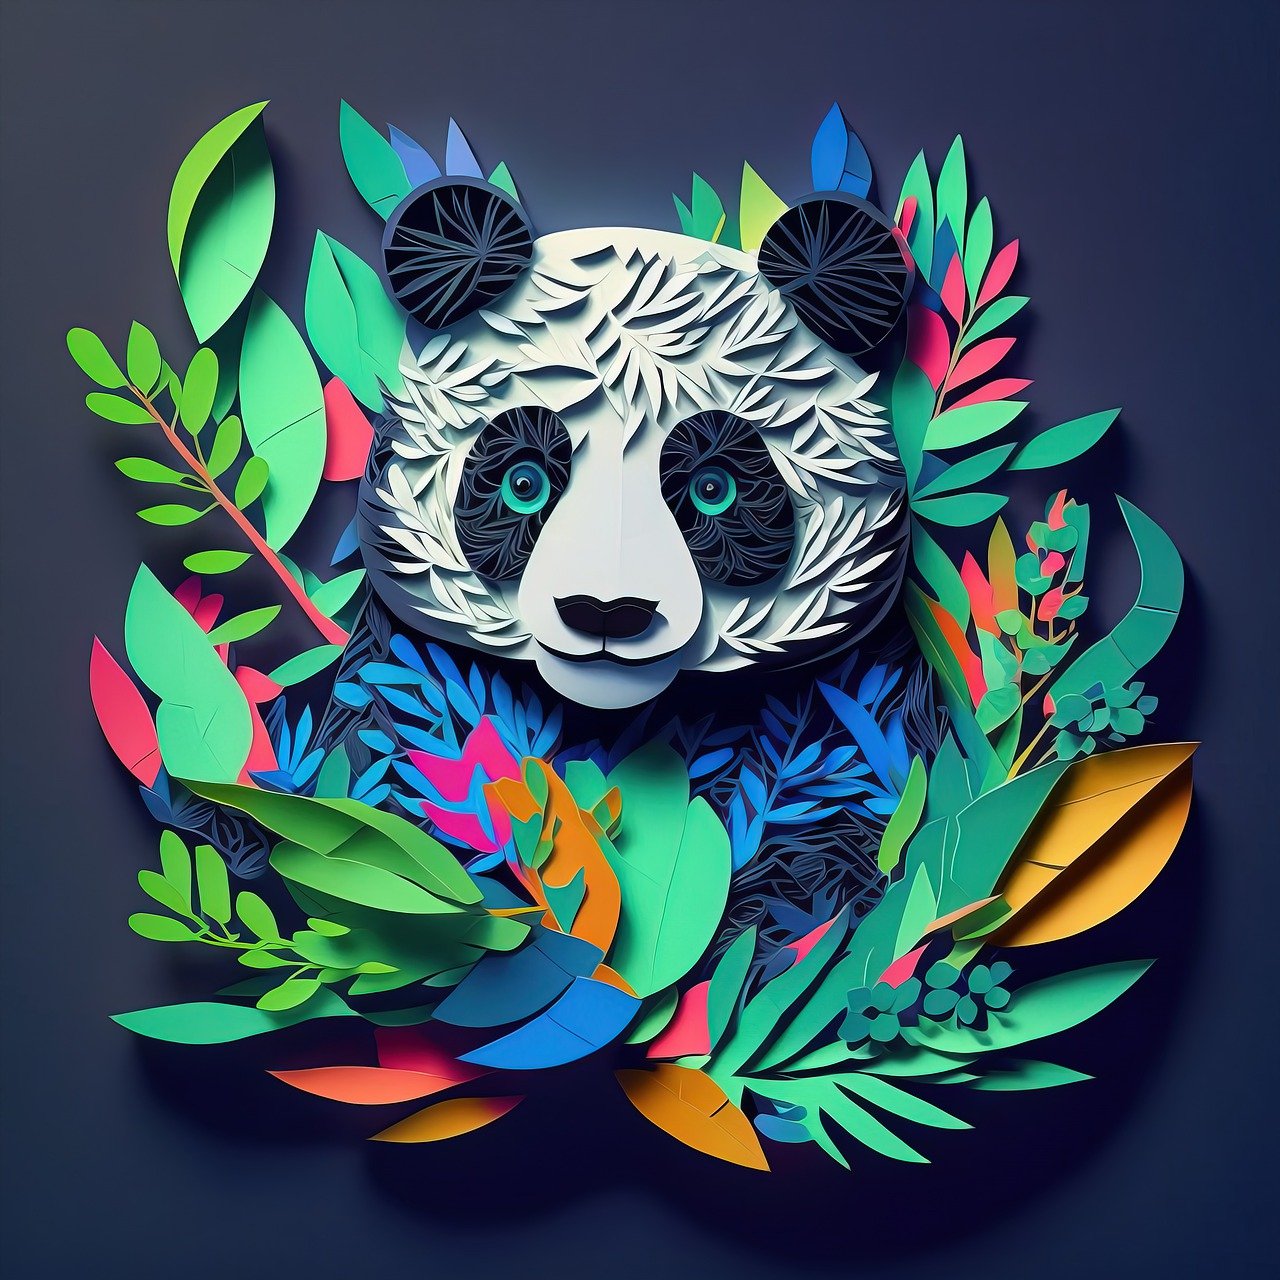 panda, paper cut art, acrylic painting-7598720.jpg